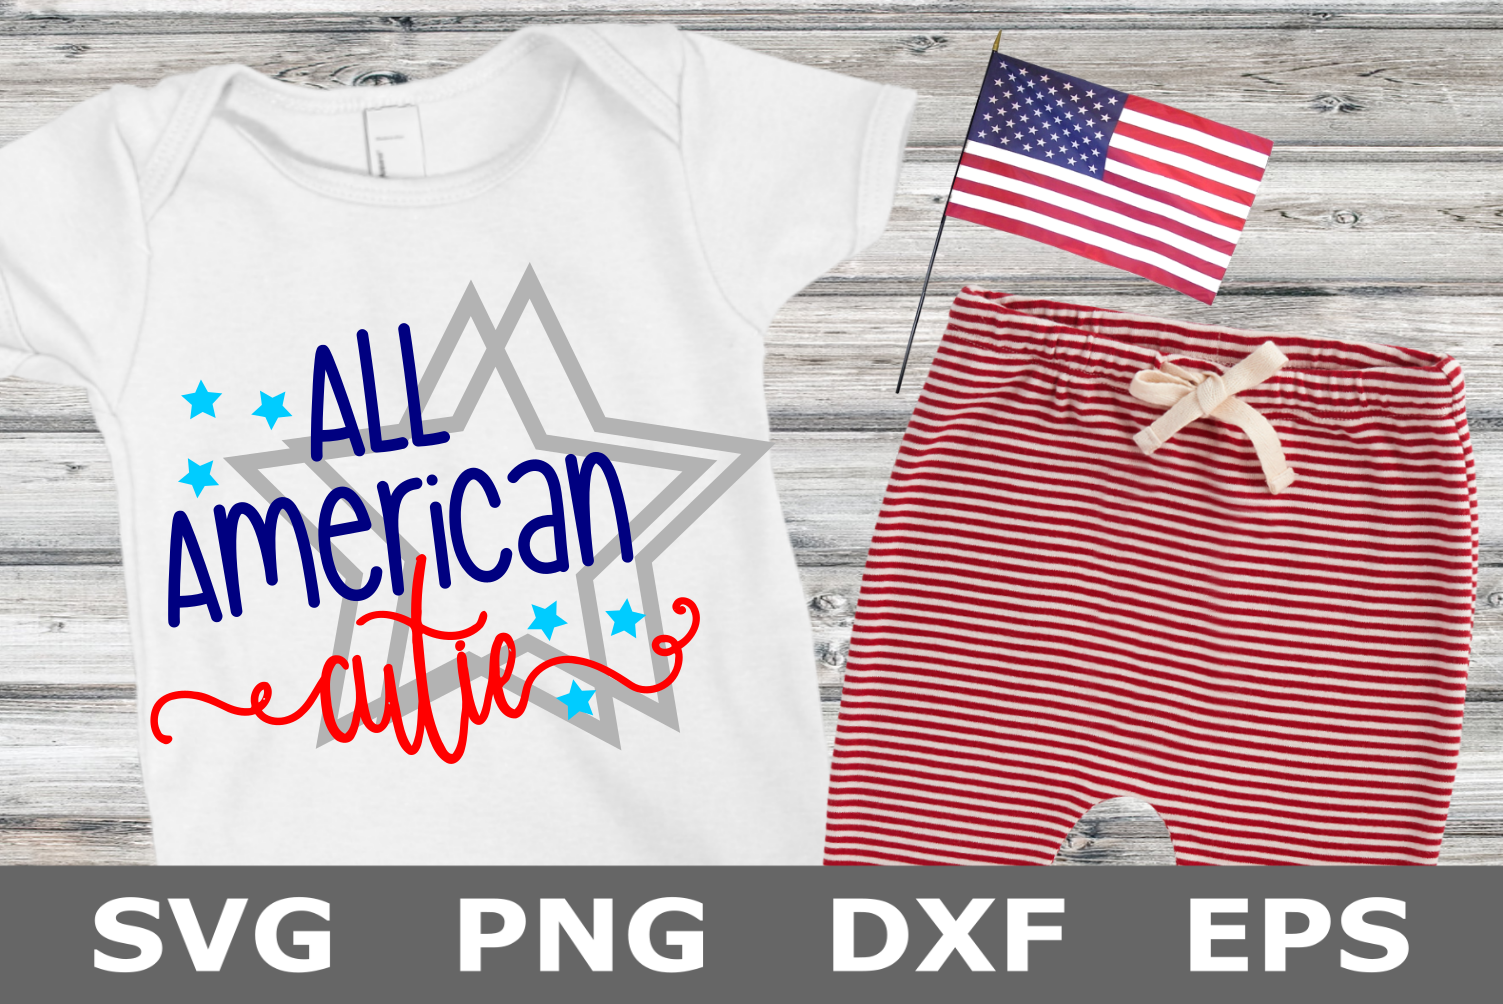 All American Cutie - An American SVG Cut File